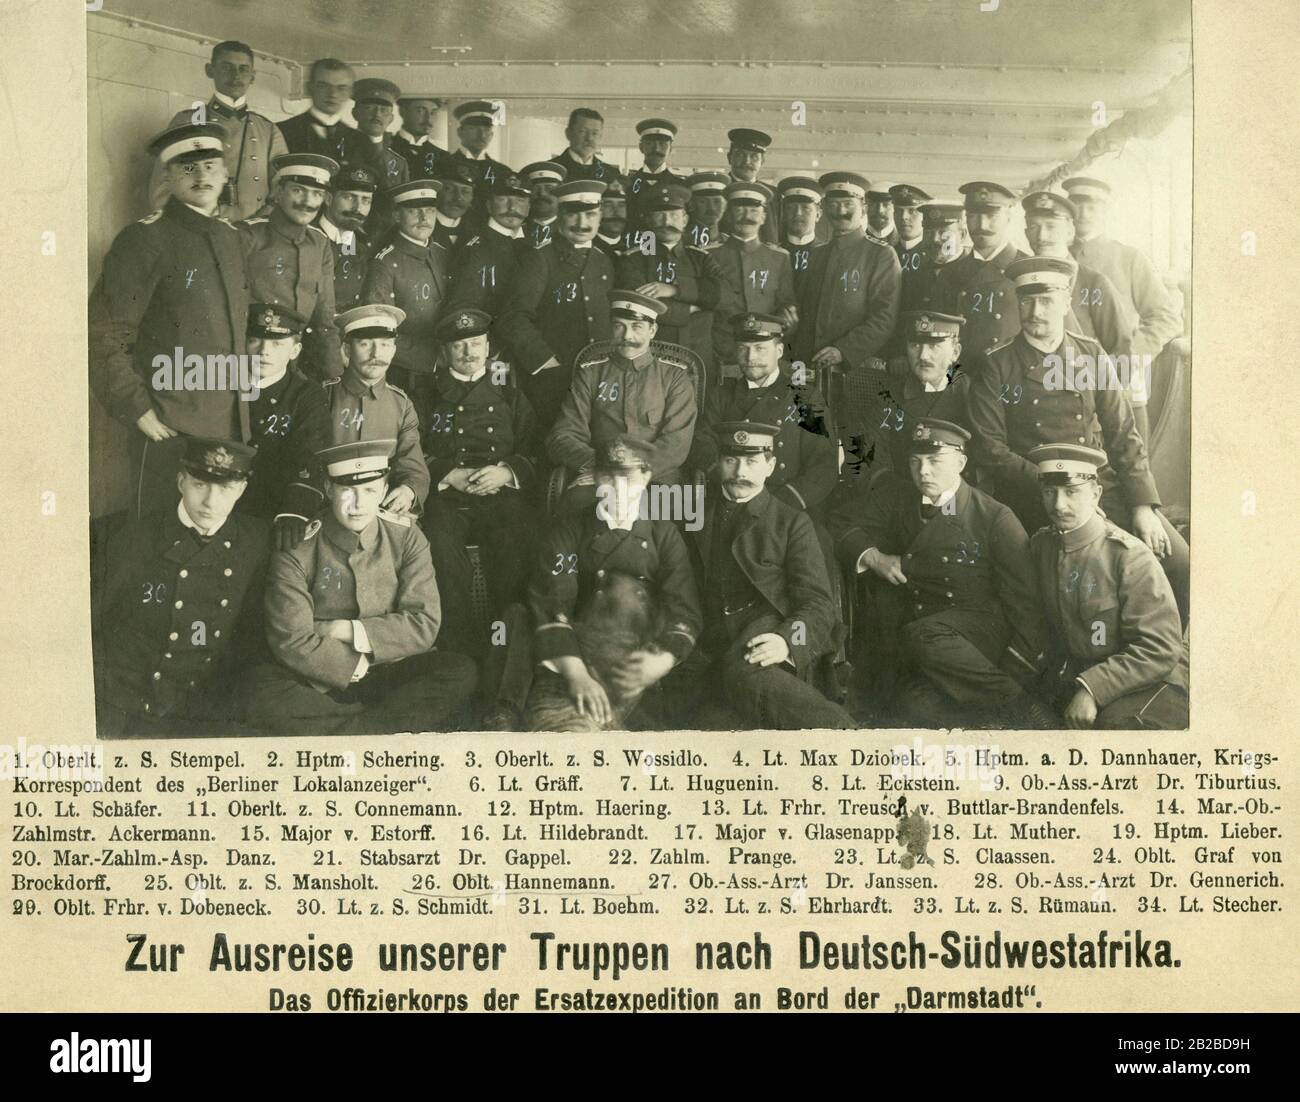 Il corpo ufficiale della spedizione sostitutiva a bordo del 'Darmstatt' quando partirai per il Sud-Ovest Africa. Qui, le truppe tedesche hanno combattuto una guerra contro gli indigeni rivolgendo Herero. Foto Stock